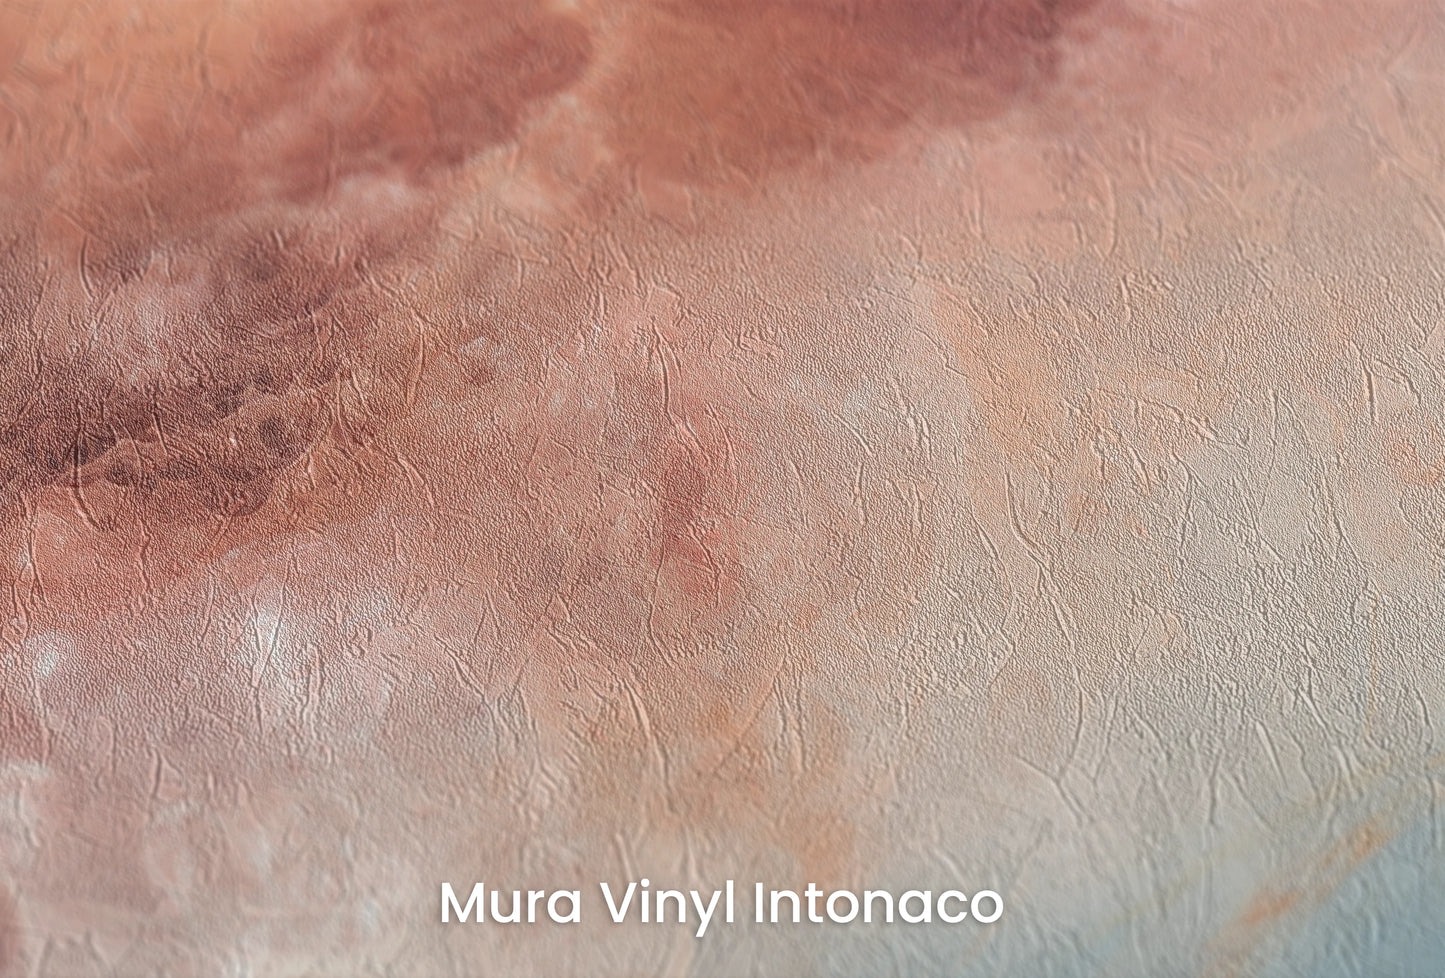 Zbliżenie na artystyczną fototapetę o nazwie Lunar Surface #2 na podłożu Mura Vinyl Intonaco - struktura tartego tynku.